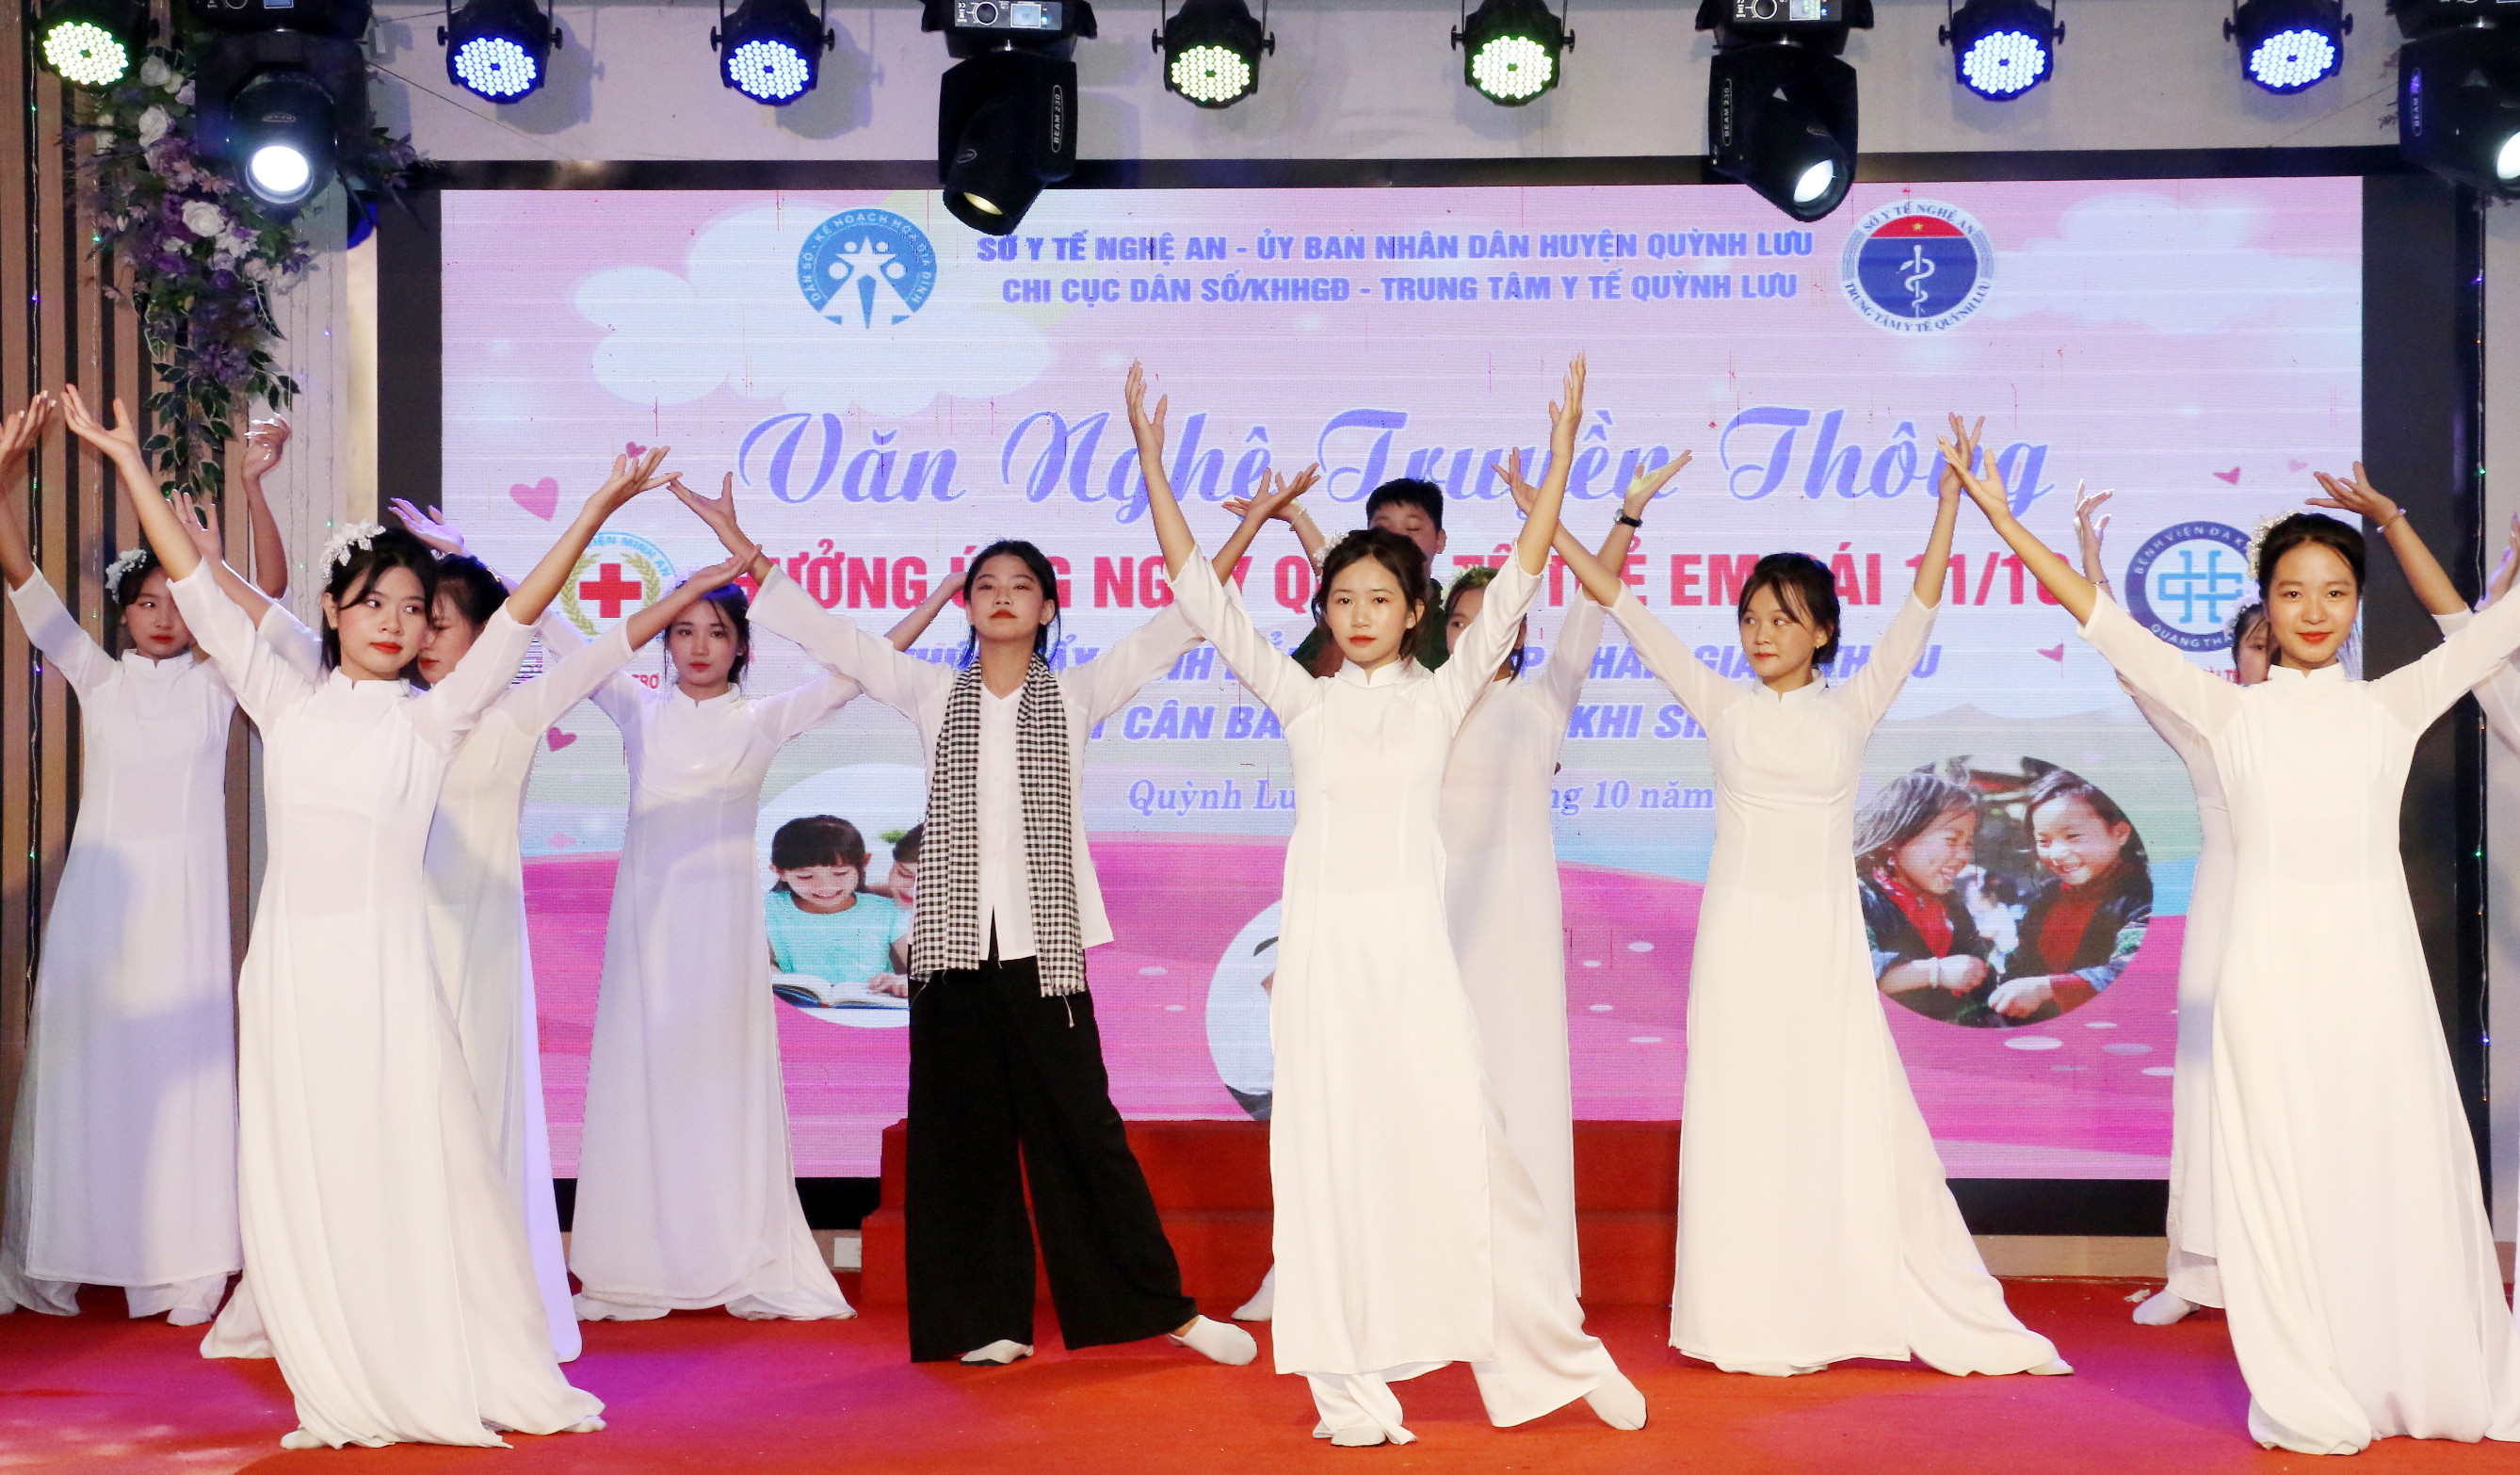 bna_Chương trình văn nghệ hưởng ứng buổi lễ truyền thông của học sinh huyện Quỳnh Lưu. Ảnh -- Mỹ Hà.jpeg